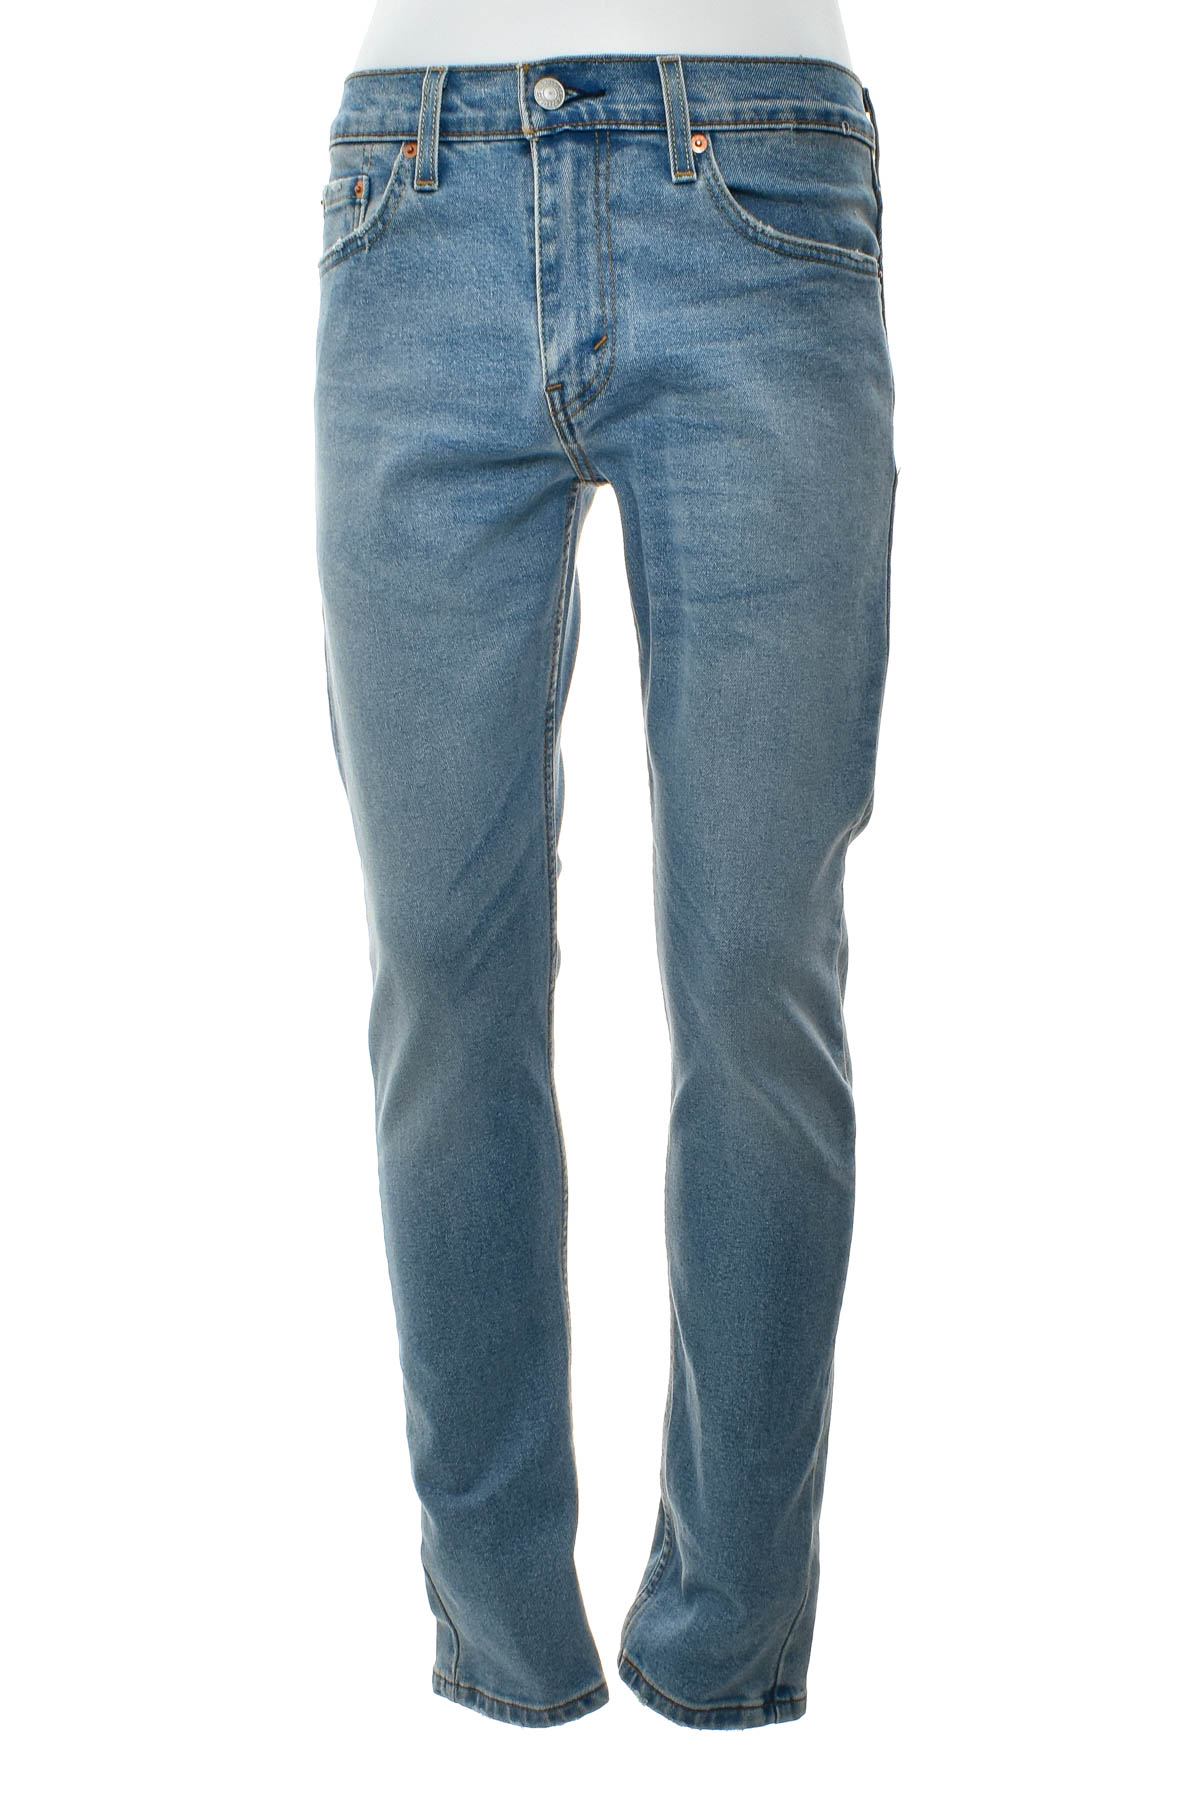 Men's jeans - LEVI'S - 0